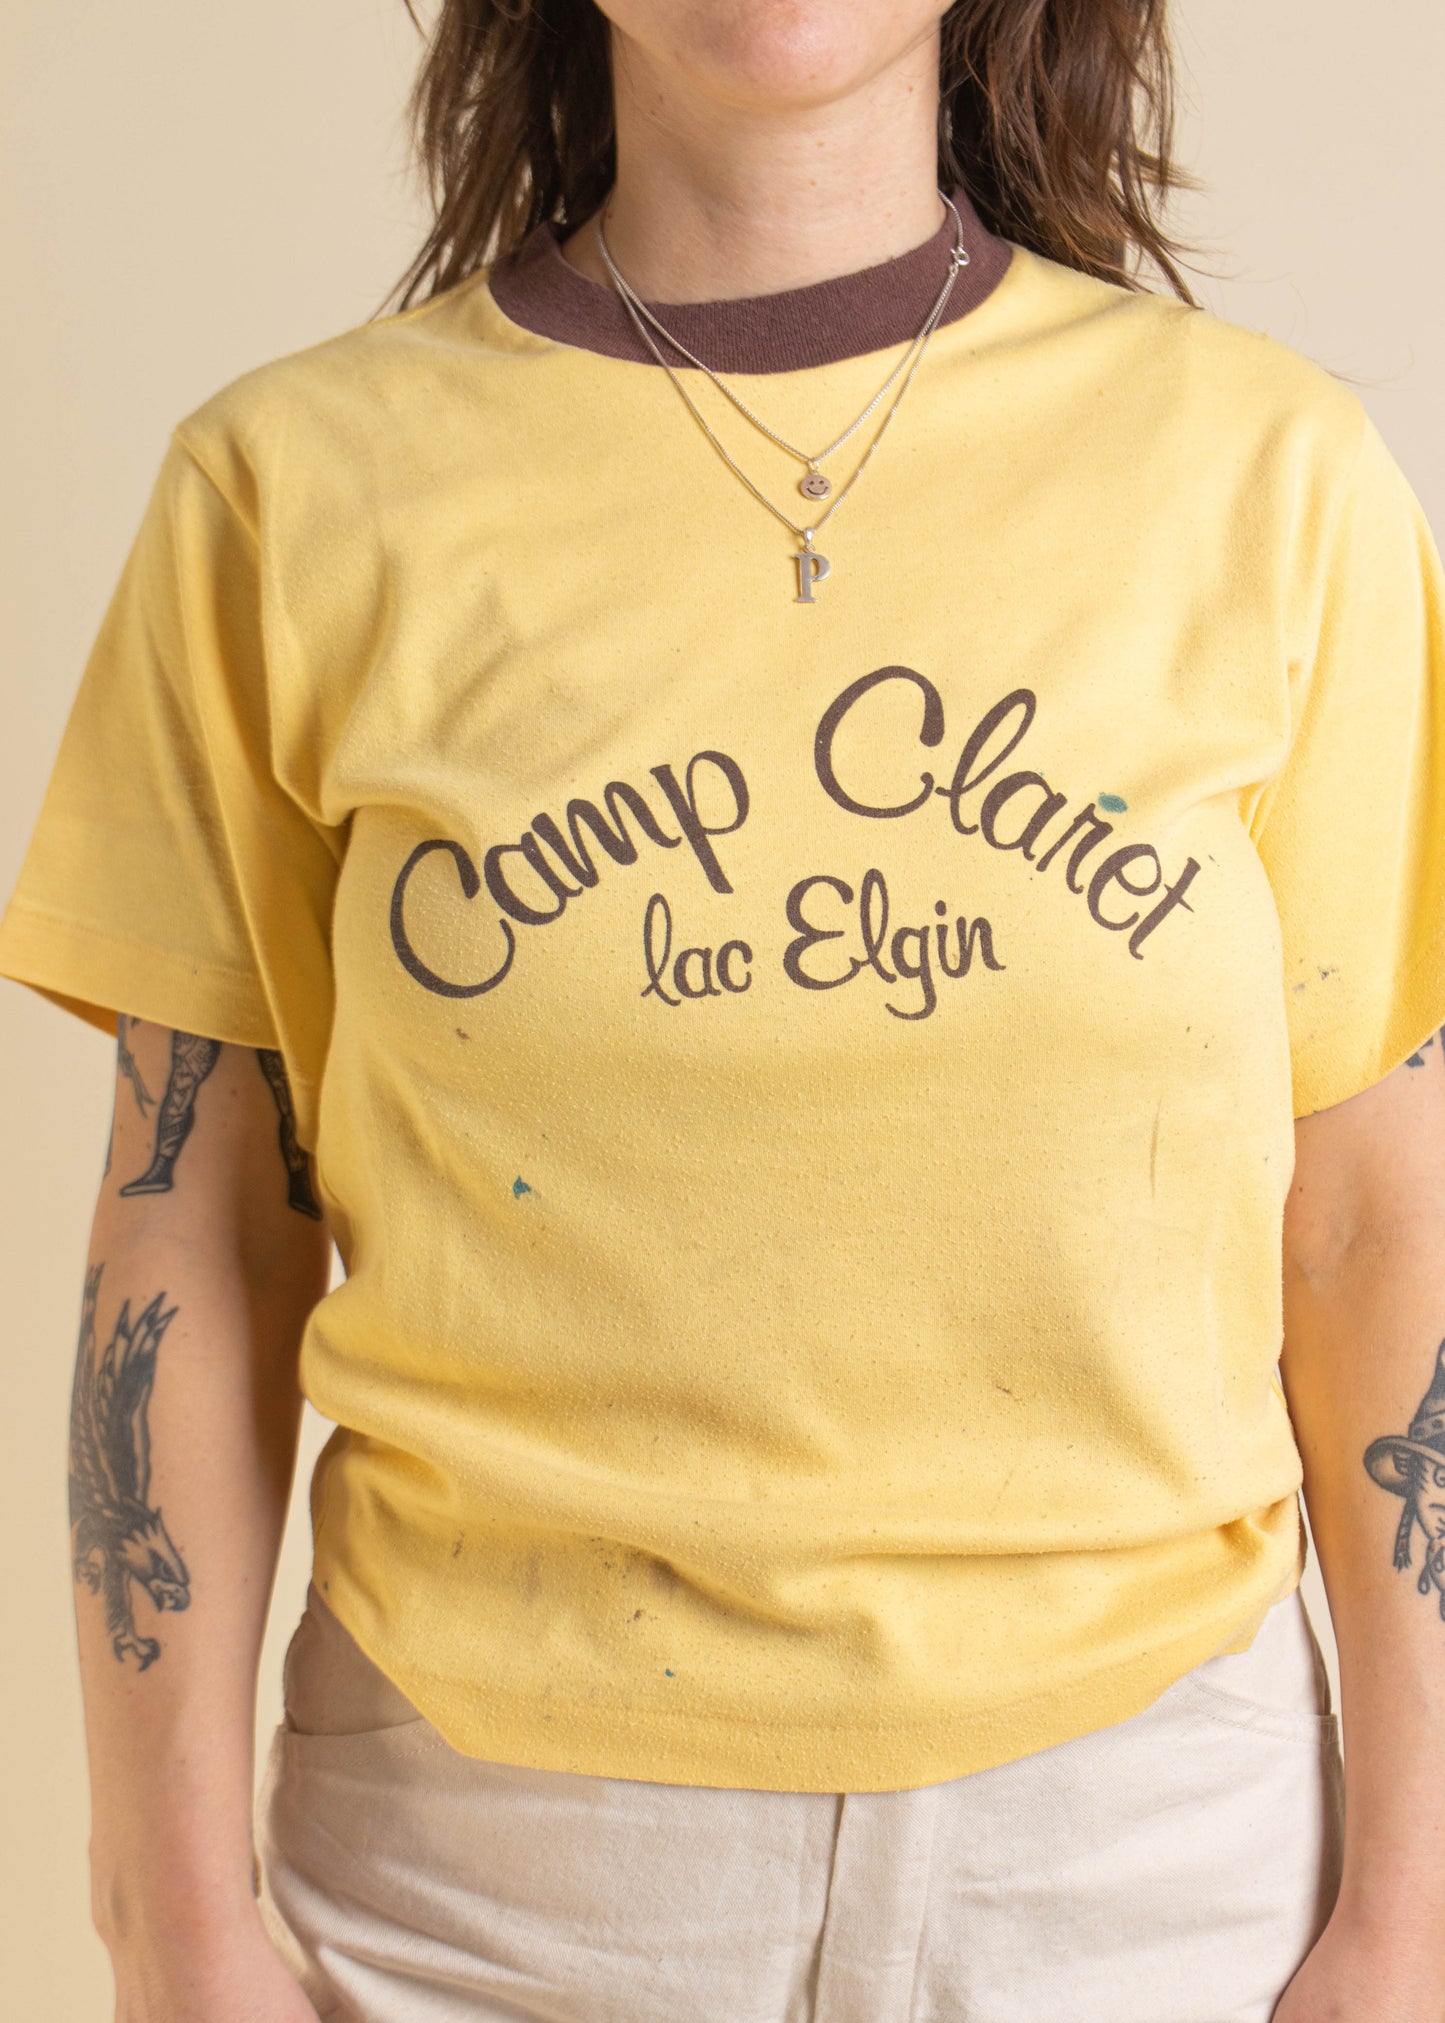 1980s Camp Claret Lac Elgin Souvenir T-Shirt Size S/M